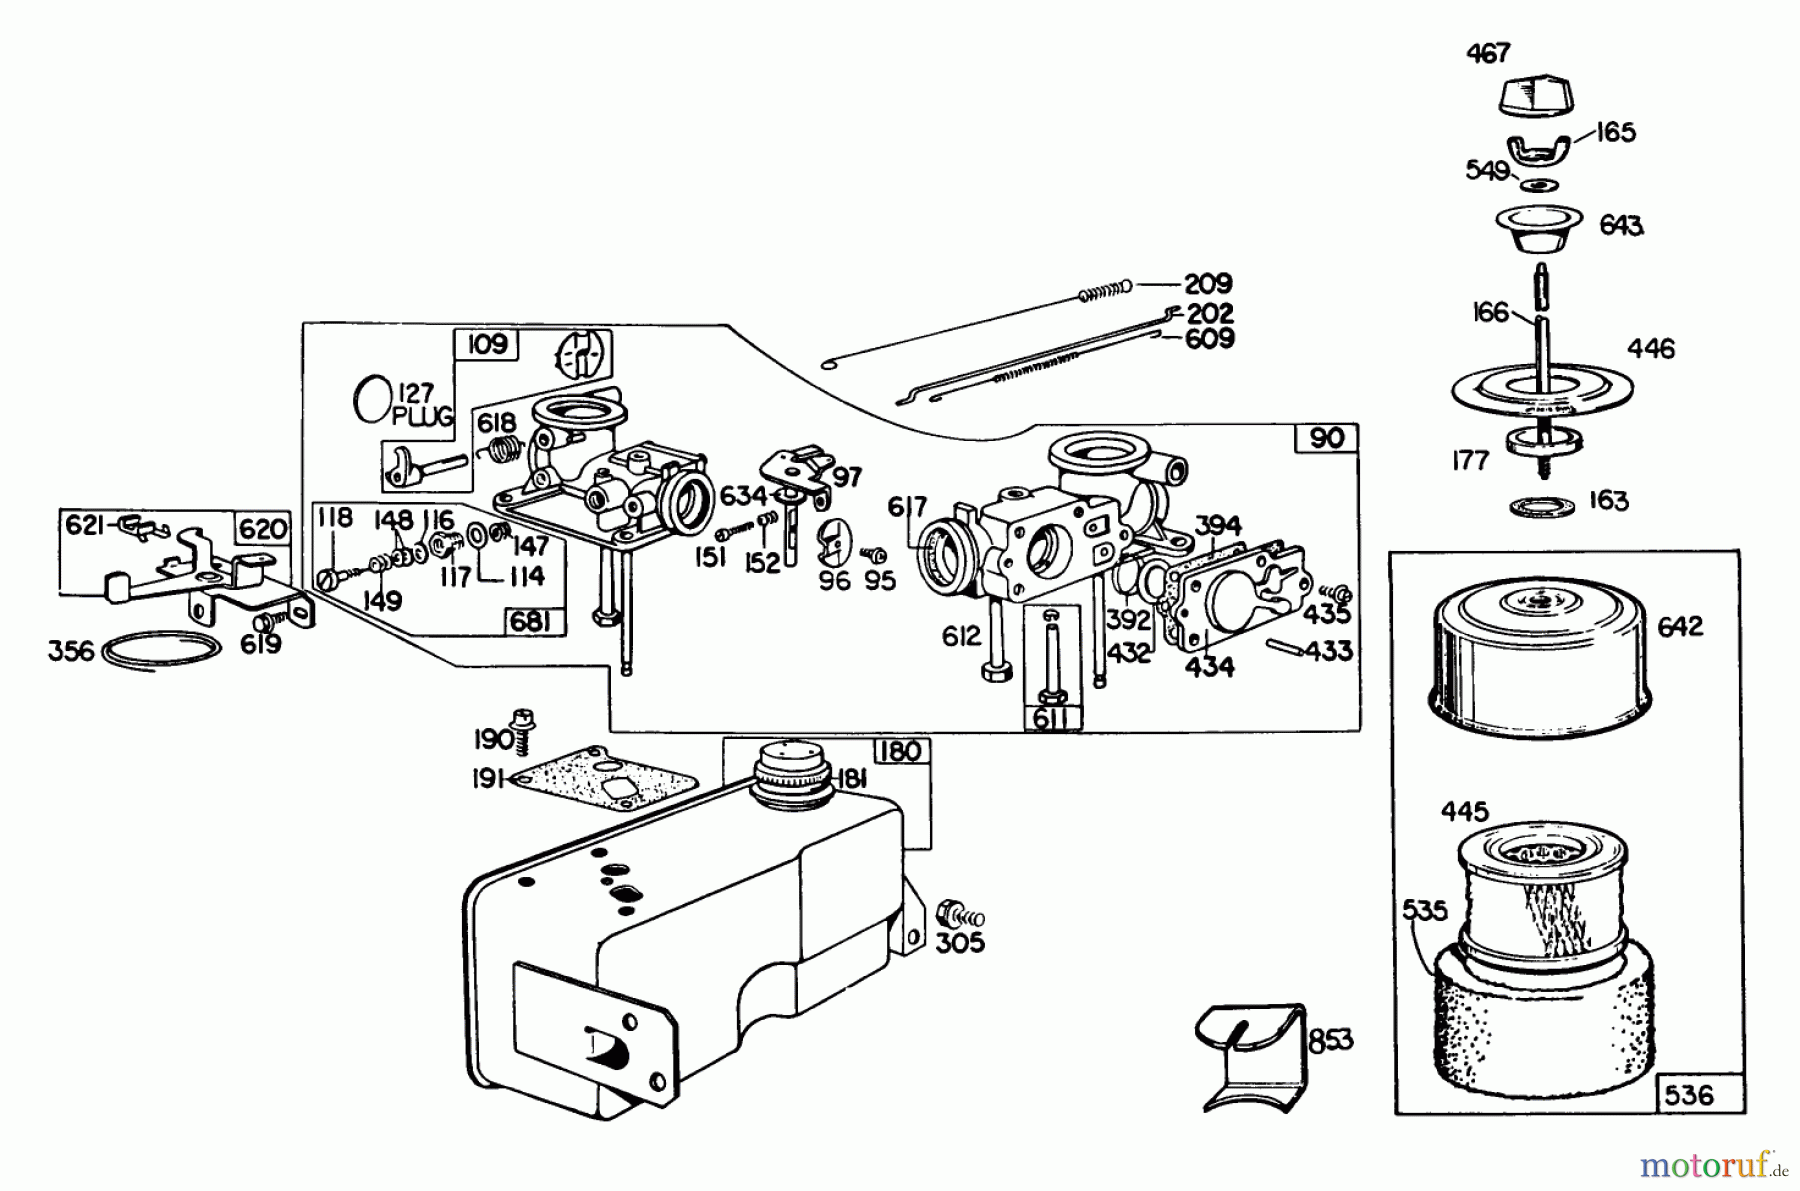  Toro Neu Mowers, Walk-Behind Seite 2 23022 - Toro Lawnmower, 1980 (0000001-0999999) ENGINE BRIGGS & STRATTON MODEL 130902-0543-01 #1